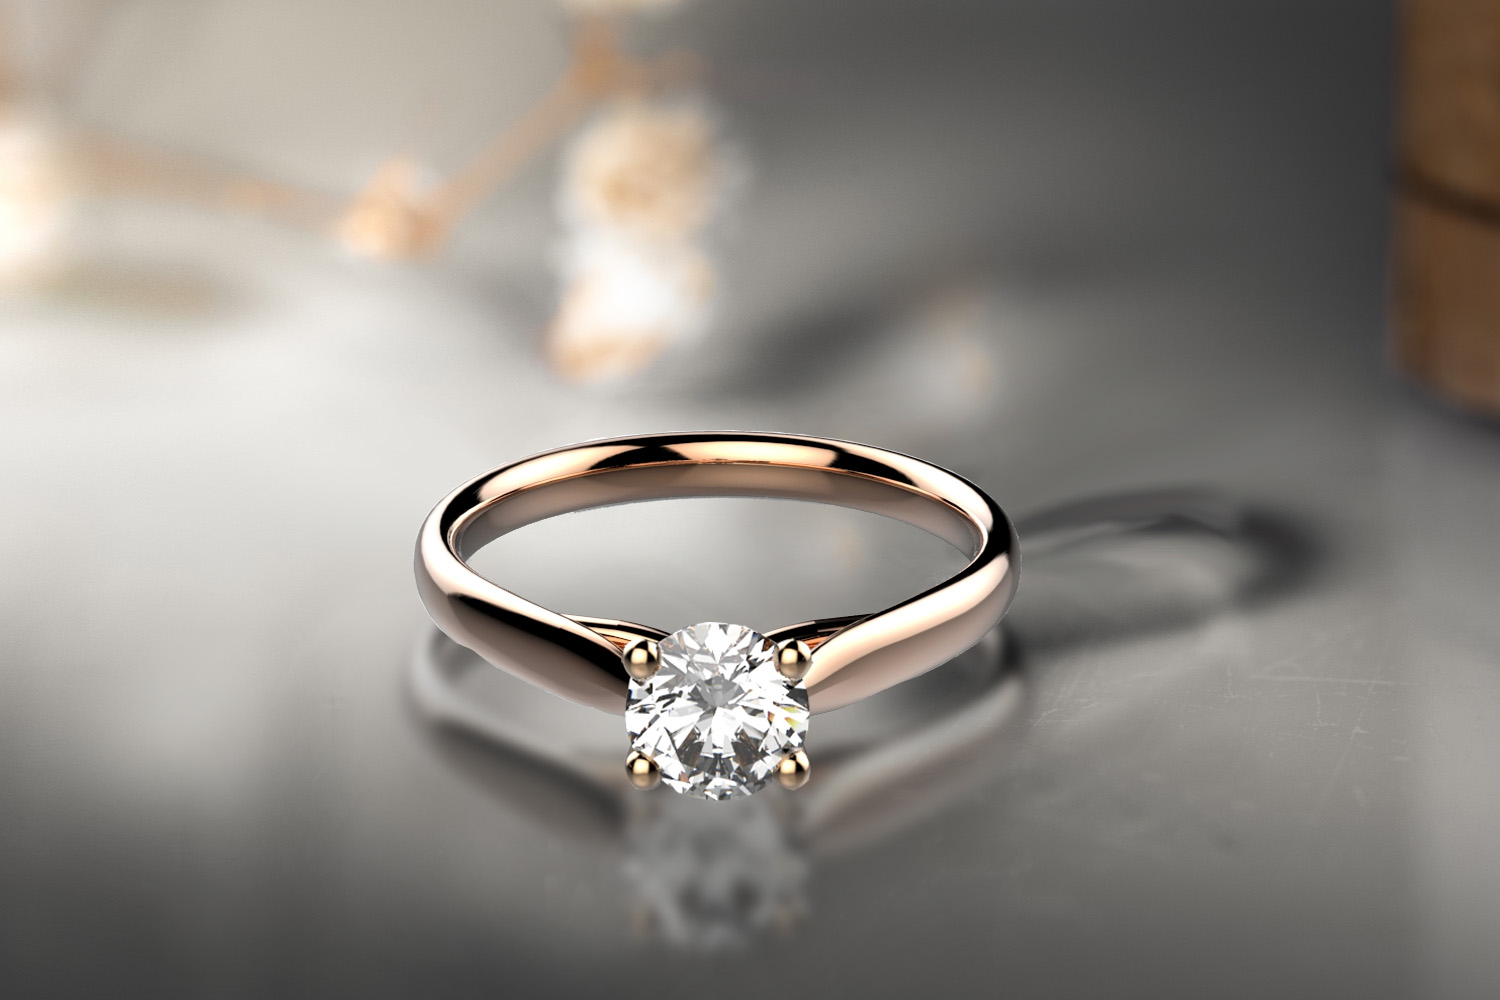 Bague or et diamant pour des fiançailles responsable